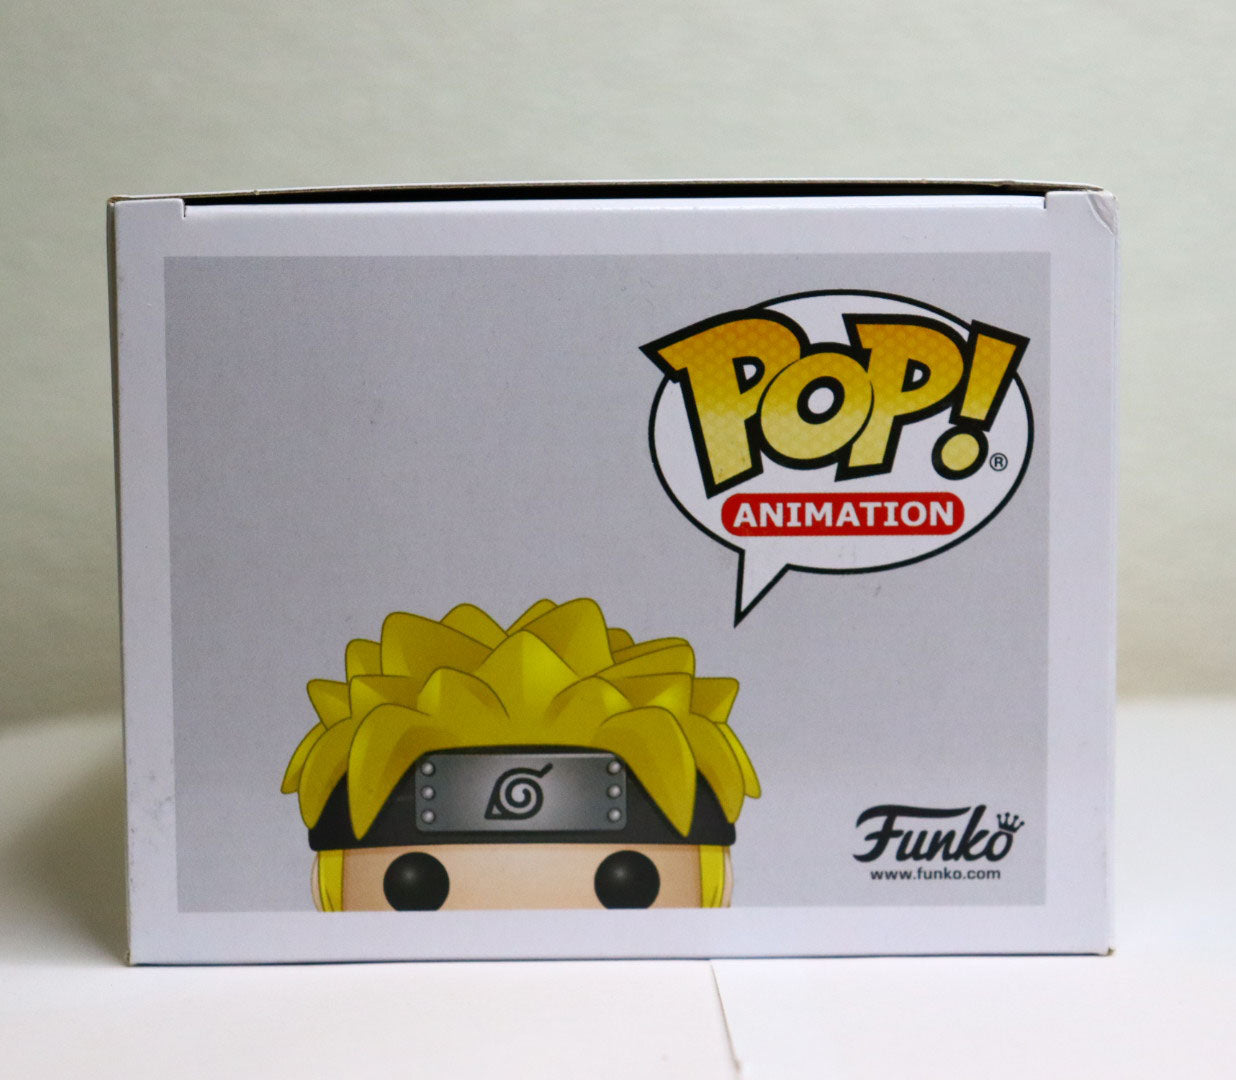 Funko Pop! Naruto Shippuden - Naruto Uzumaki #823 Exclusive - Geek